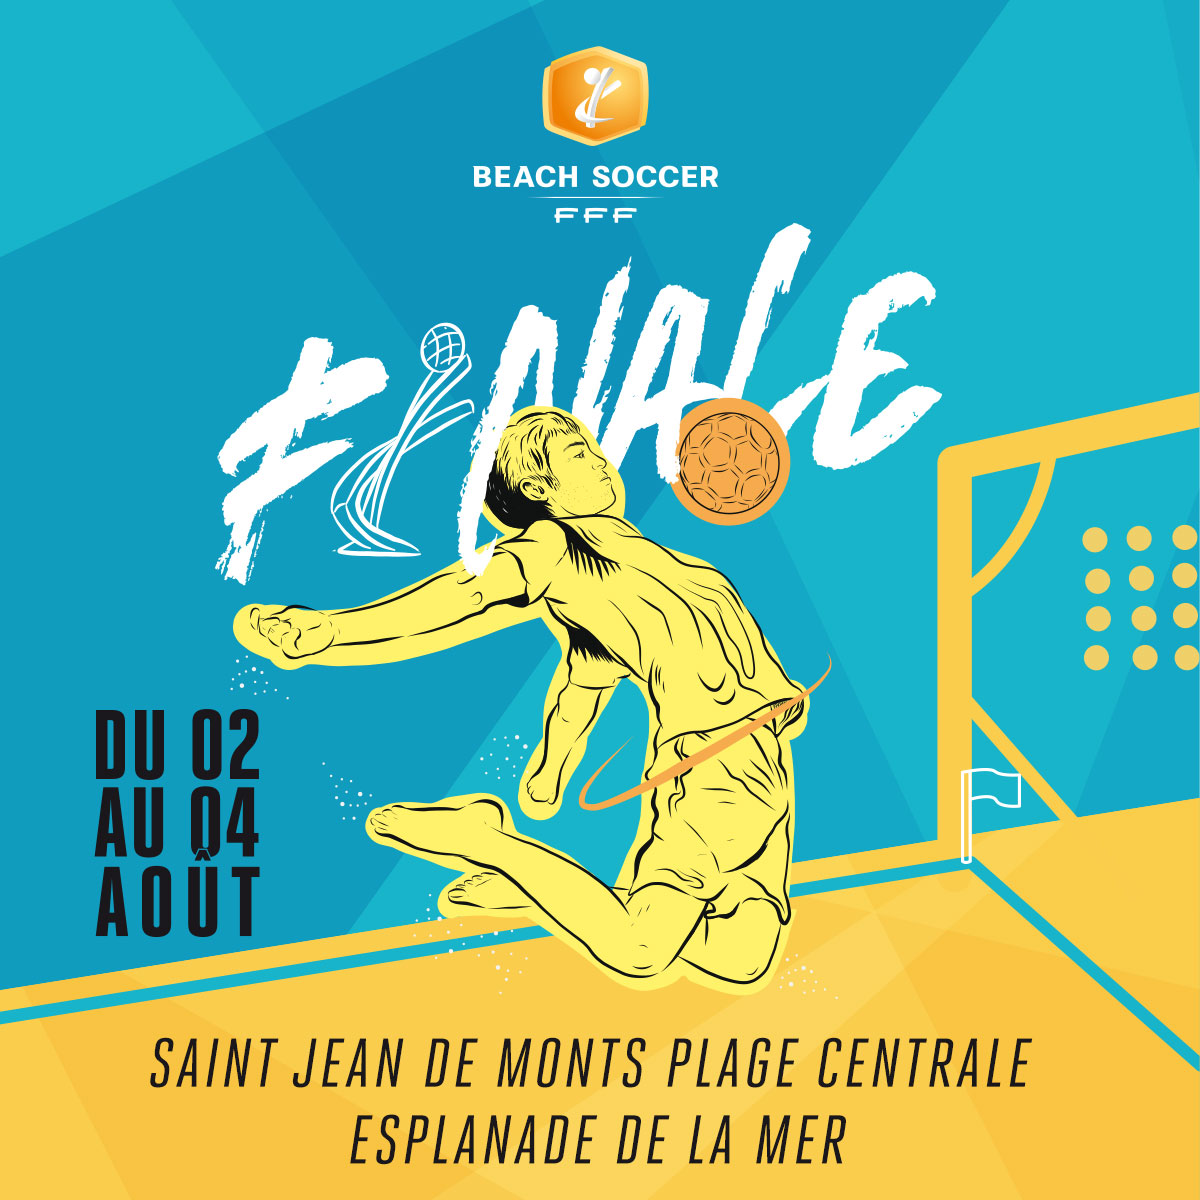 Beach Soccer - Première finale nationale des clubs à St Jean de Monts